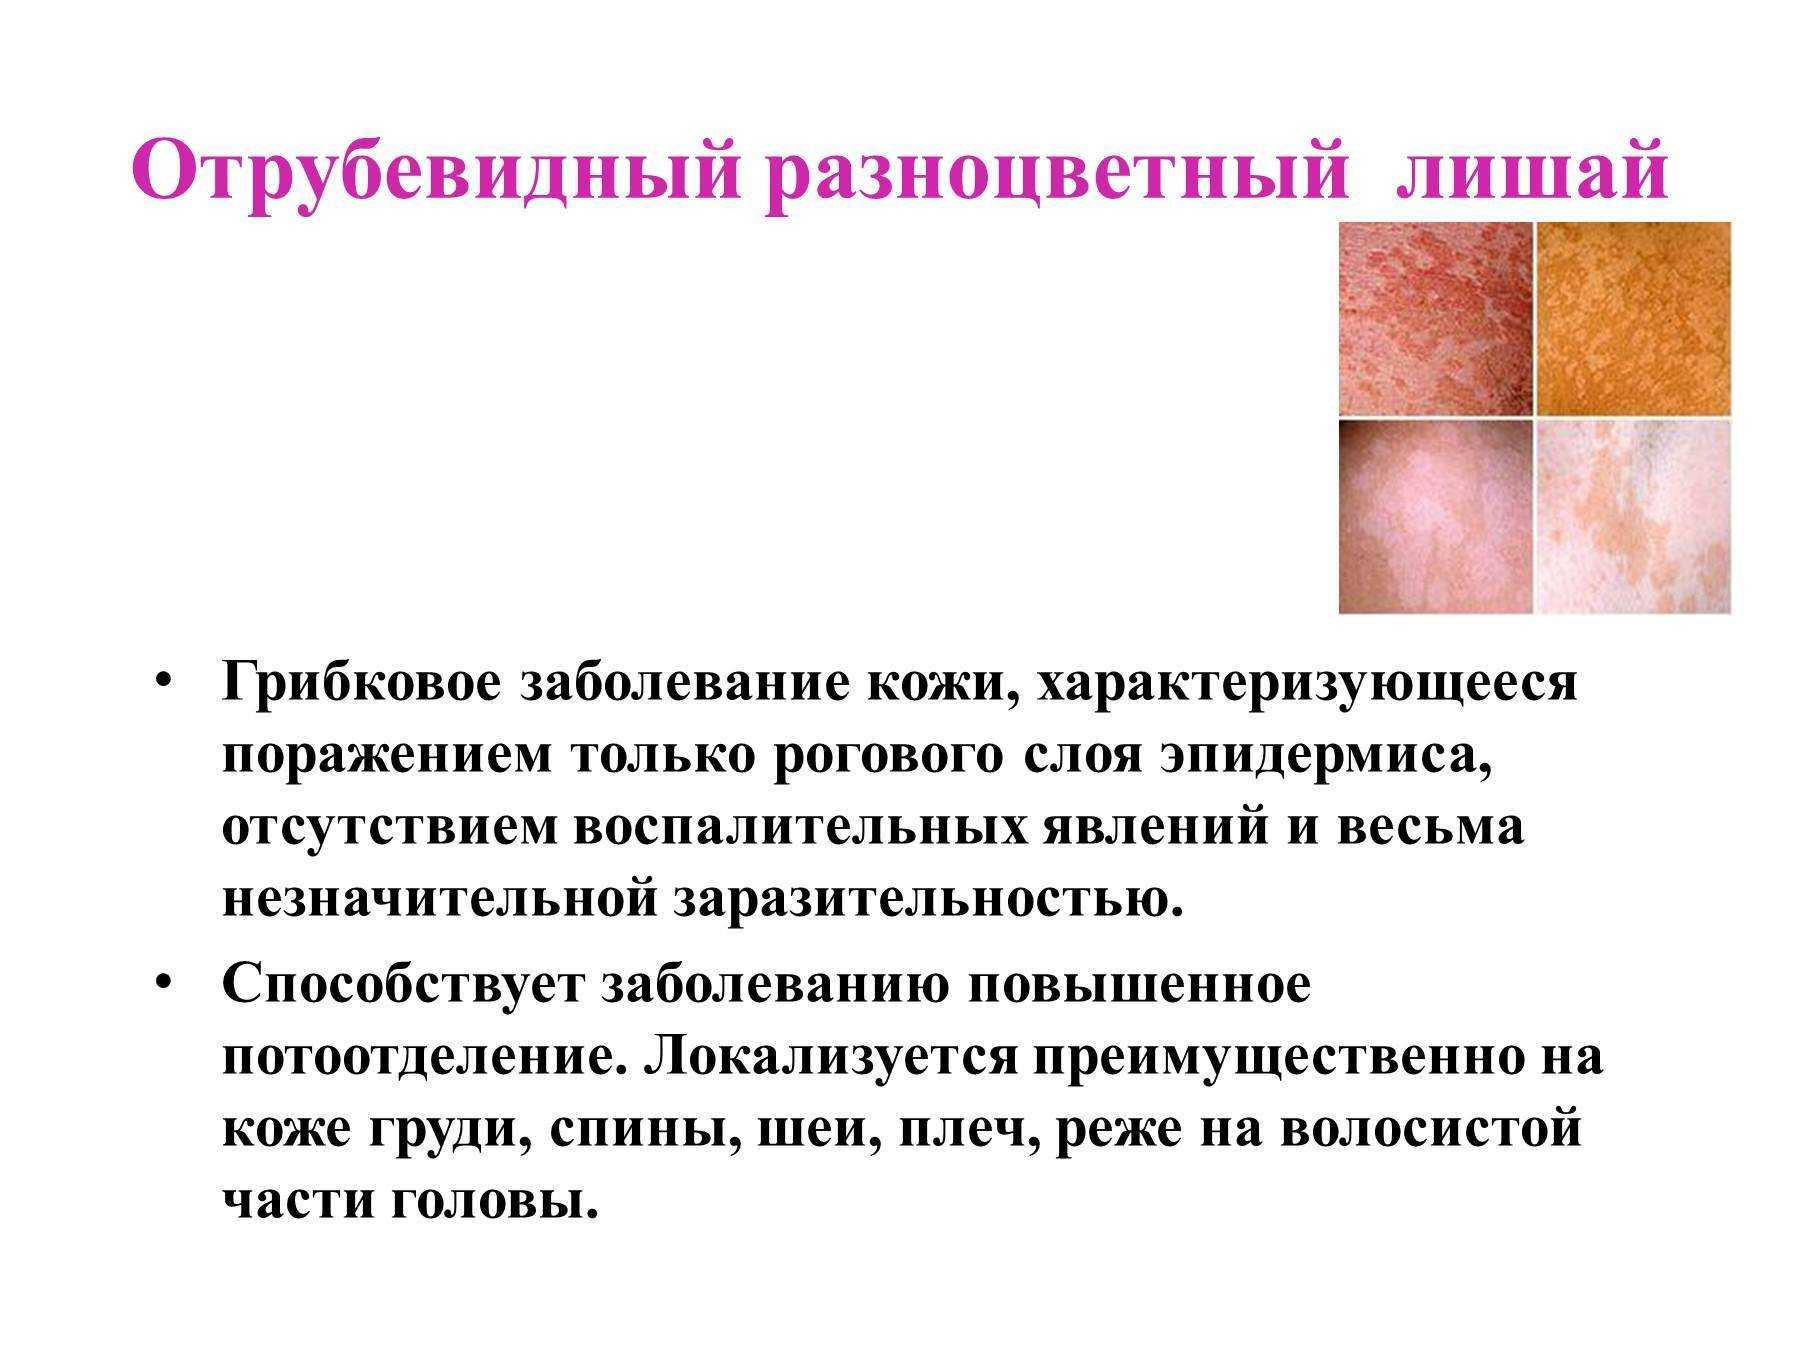 Причины нарушения кожи. Отрубевидный лишай локализуется. Розовый отрубевидный и разноцветный лишай. Поражение кожи розовый лишай. Симптомы отрубевидного (разноцветного) лишая.